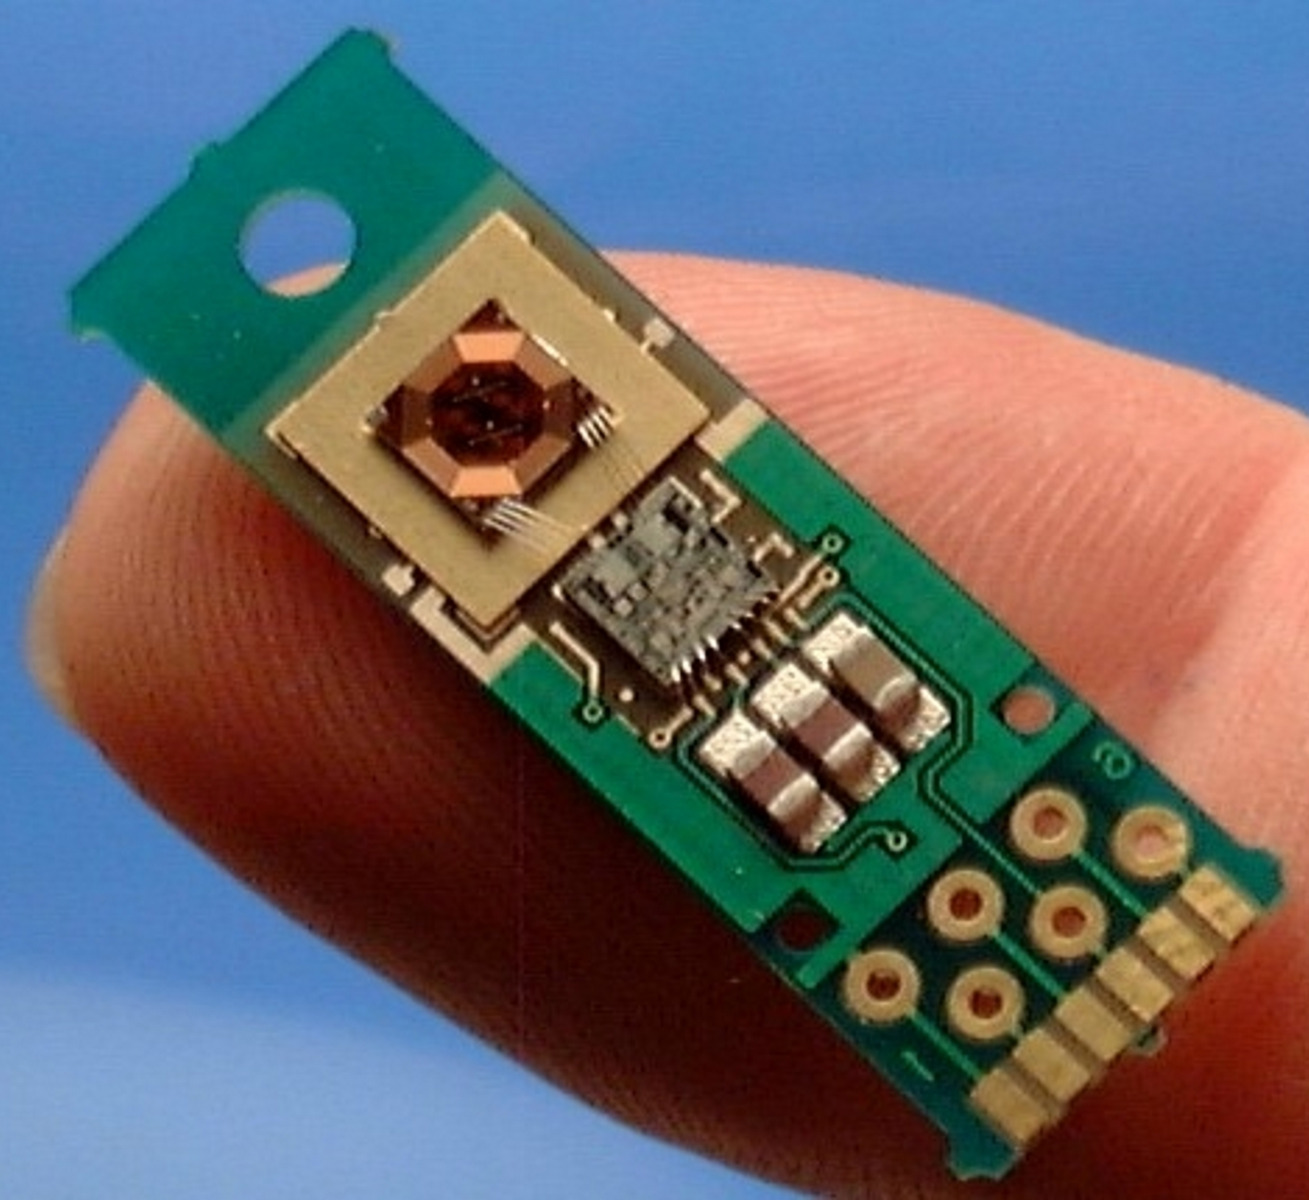 POSIC Produkt mit dem Spulen-Chip und dem Elektronik-Chip nebeneinander